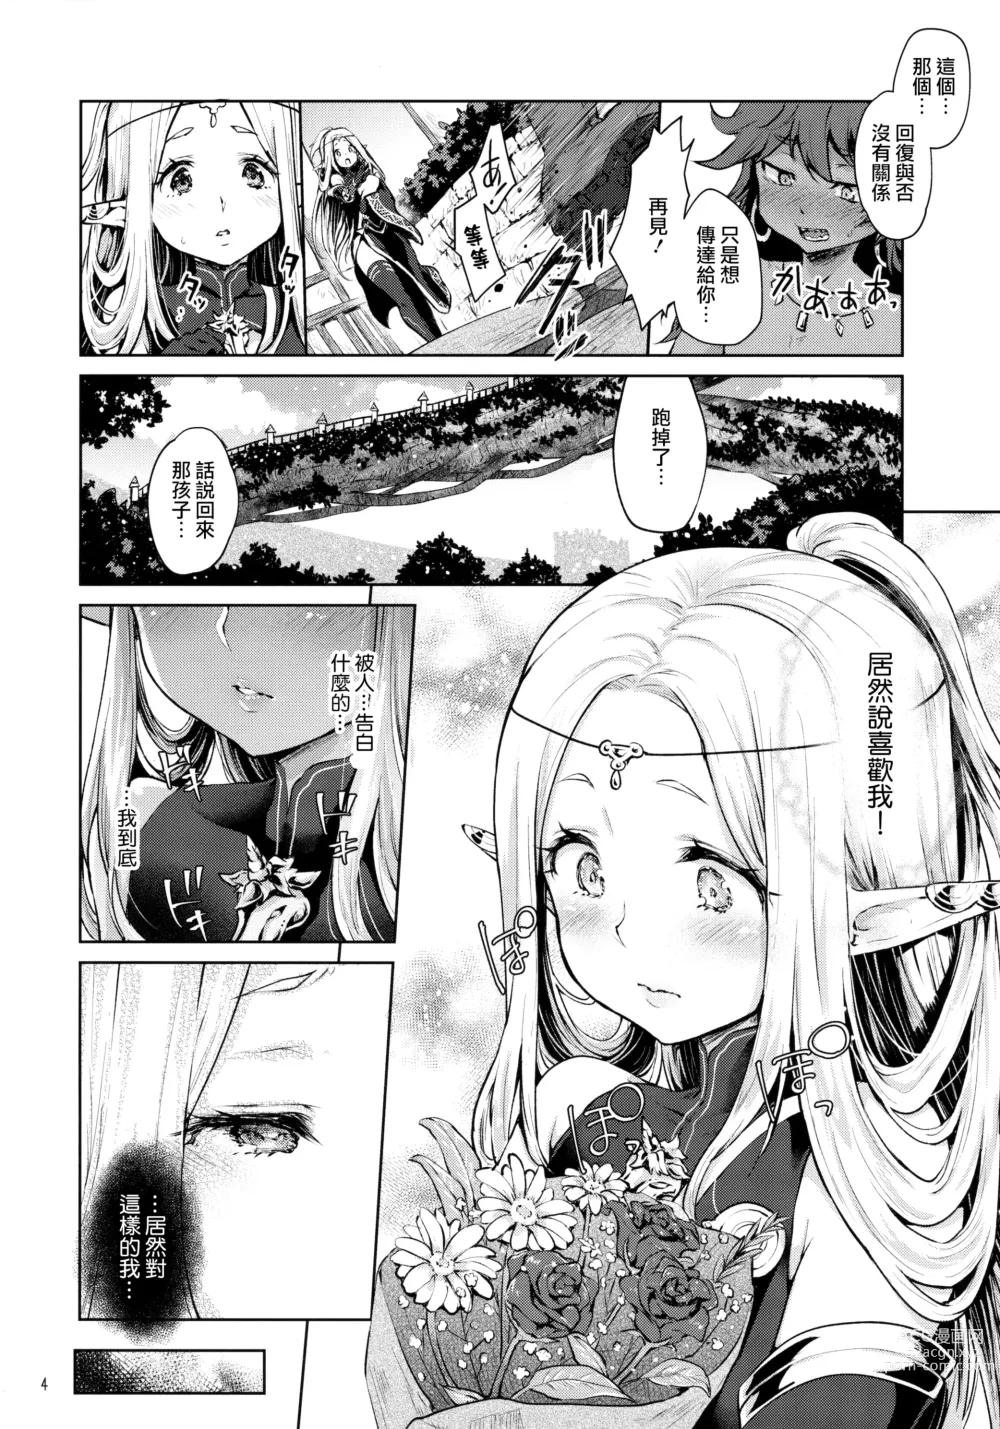 Page 4 of doujinshi Hajimete no Sekaiju 2